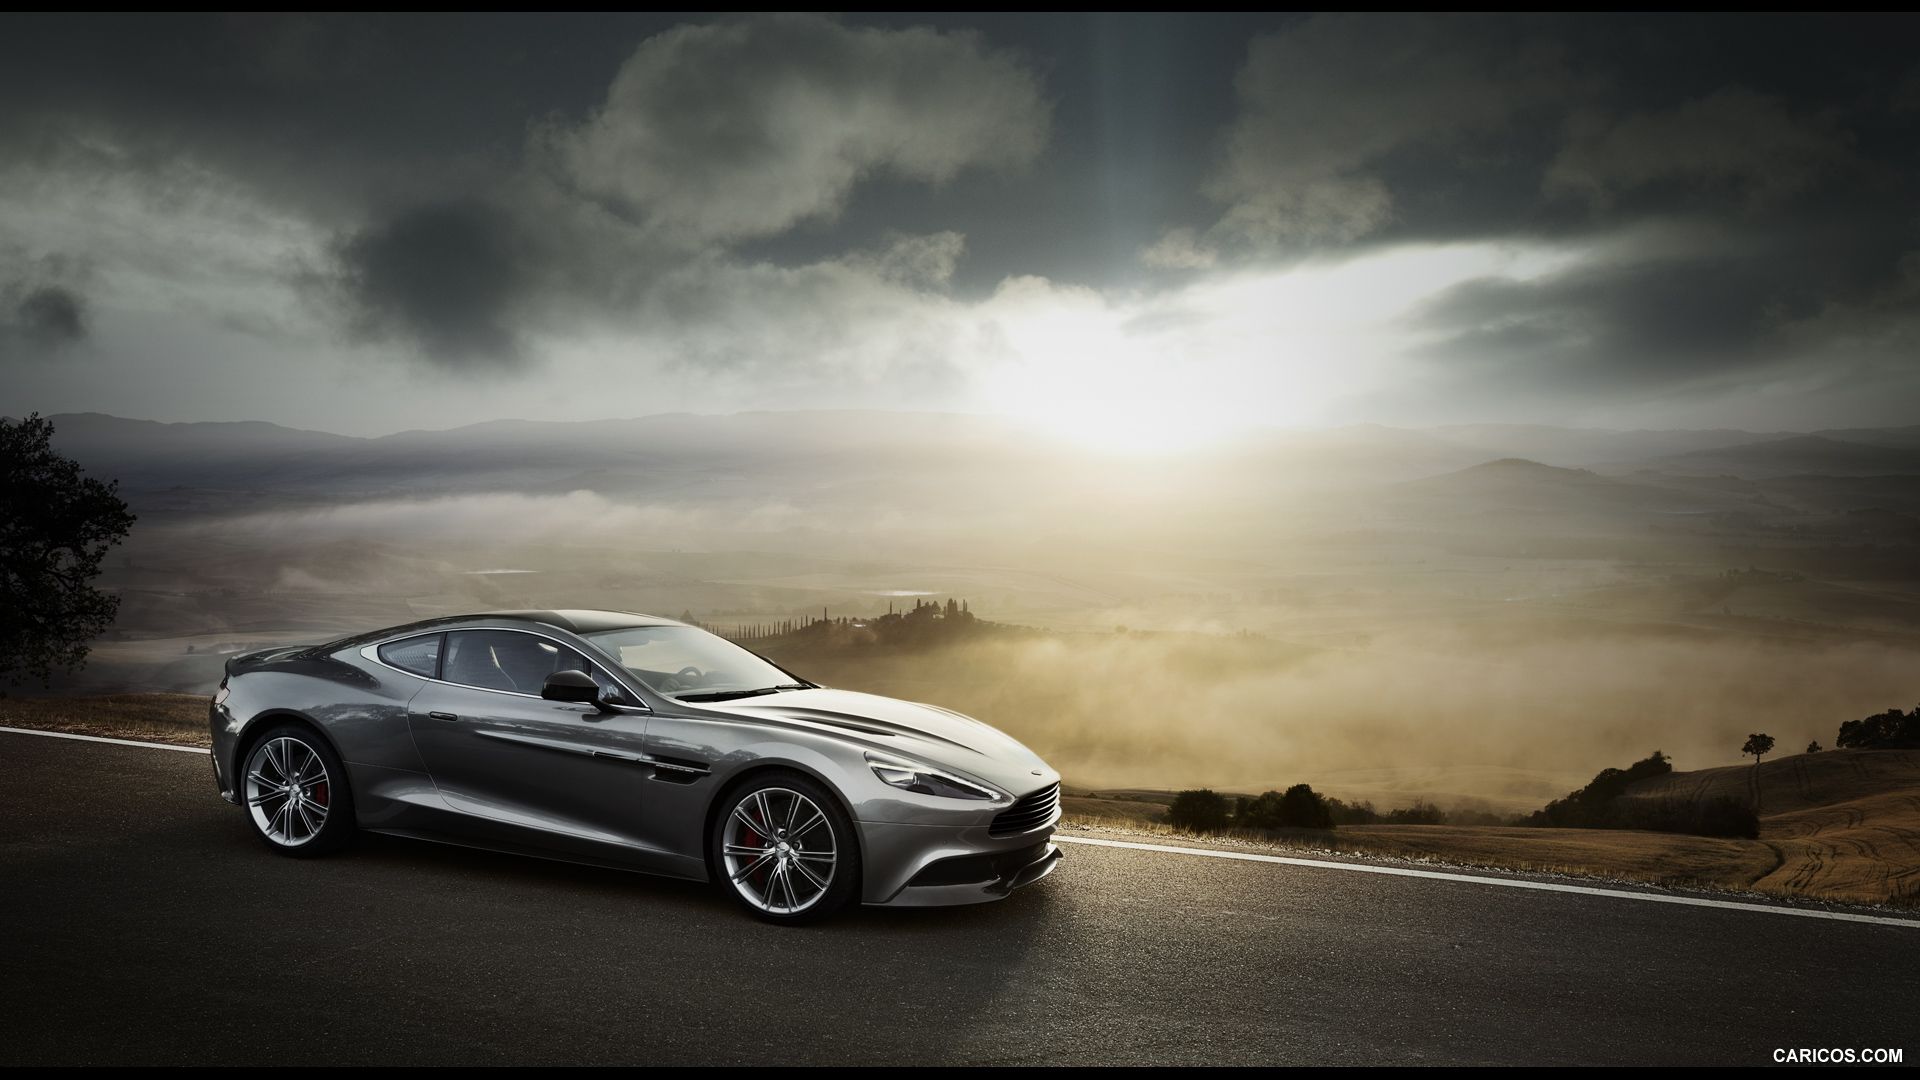 Aston Martin fondo de pantalla | 1920x1080 | # 75743